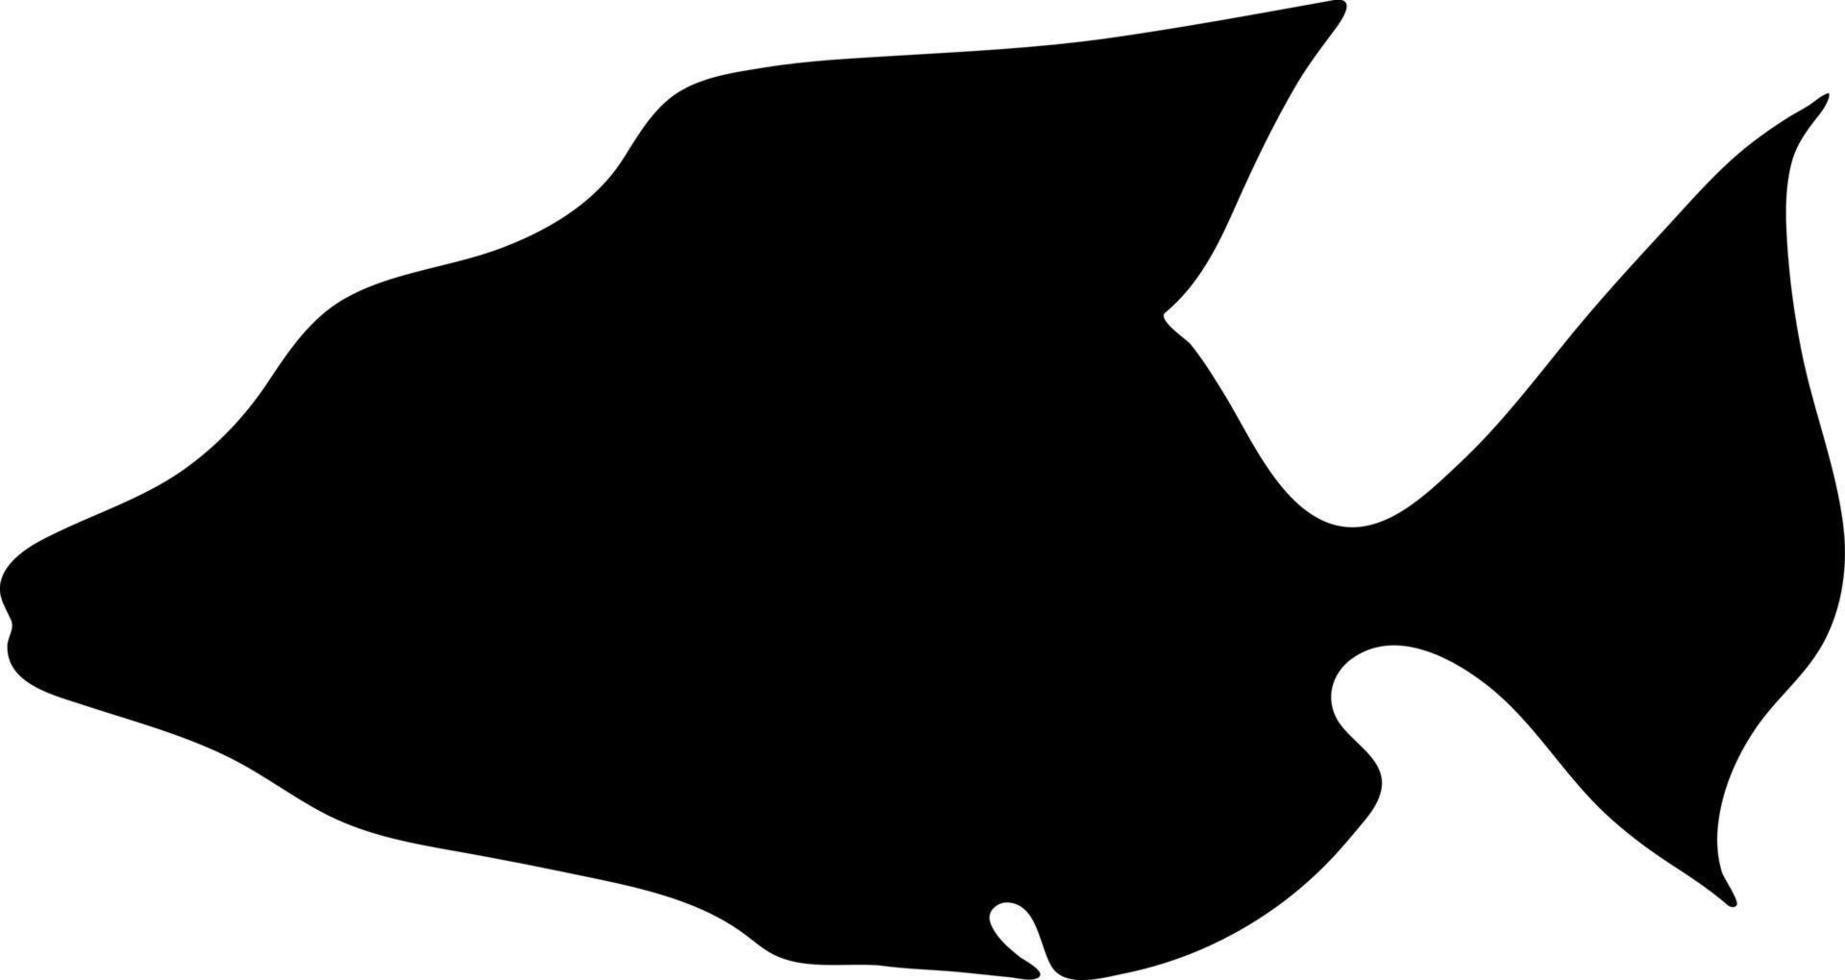 zwart silhouet van een vis op een witte achtergrond. vector afbeelding.